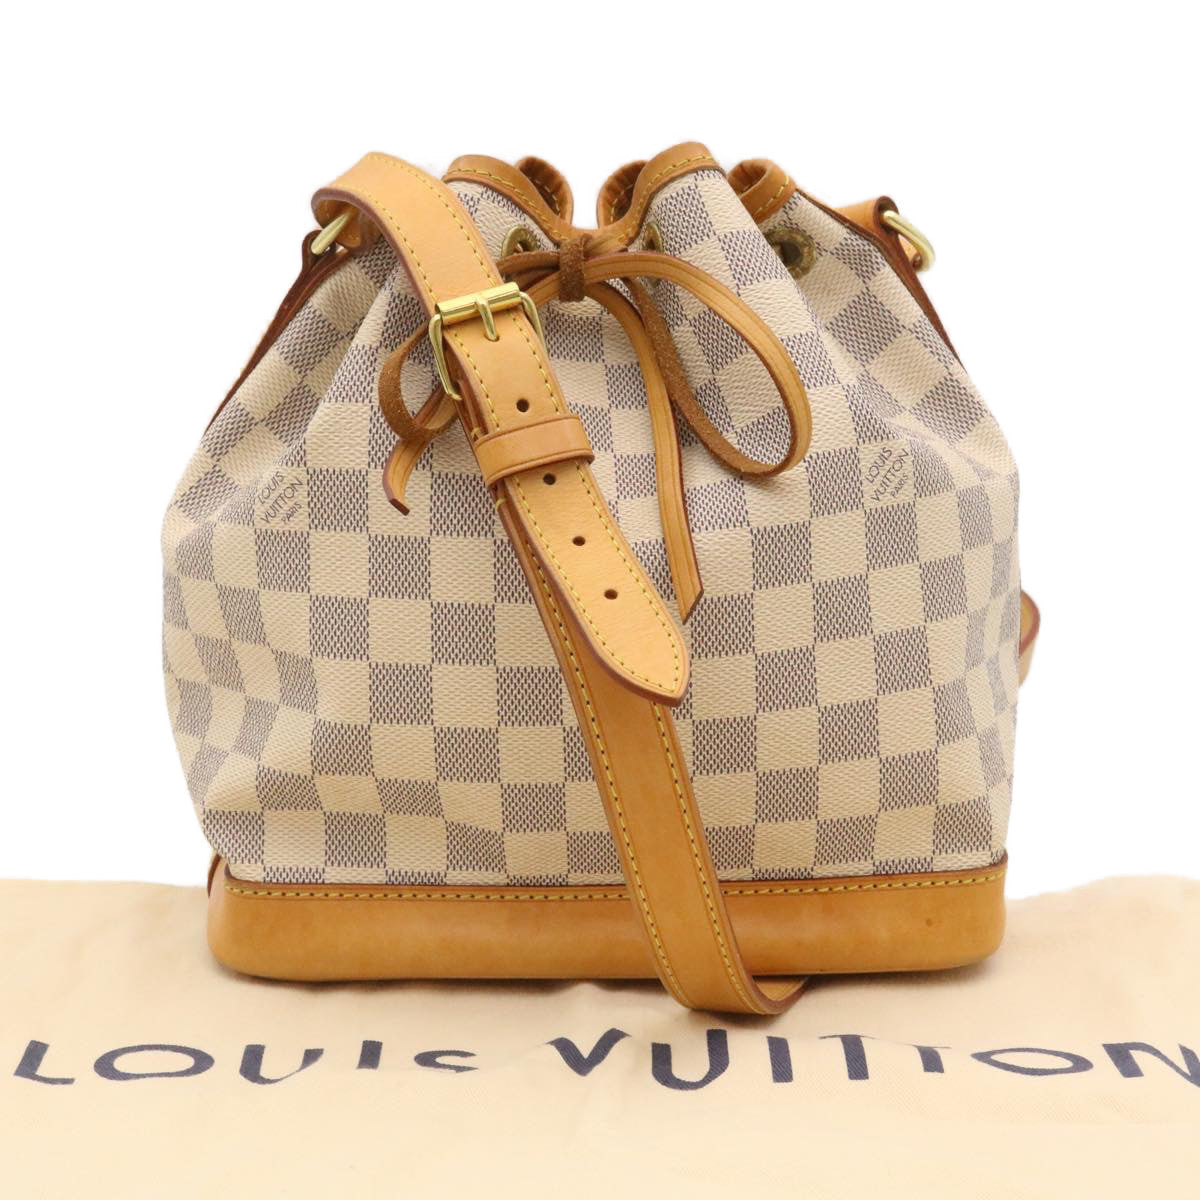 LOUIS VUITTON Damier Azur Noe BB Shoulder Bag N41220 LV Auth 29155A